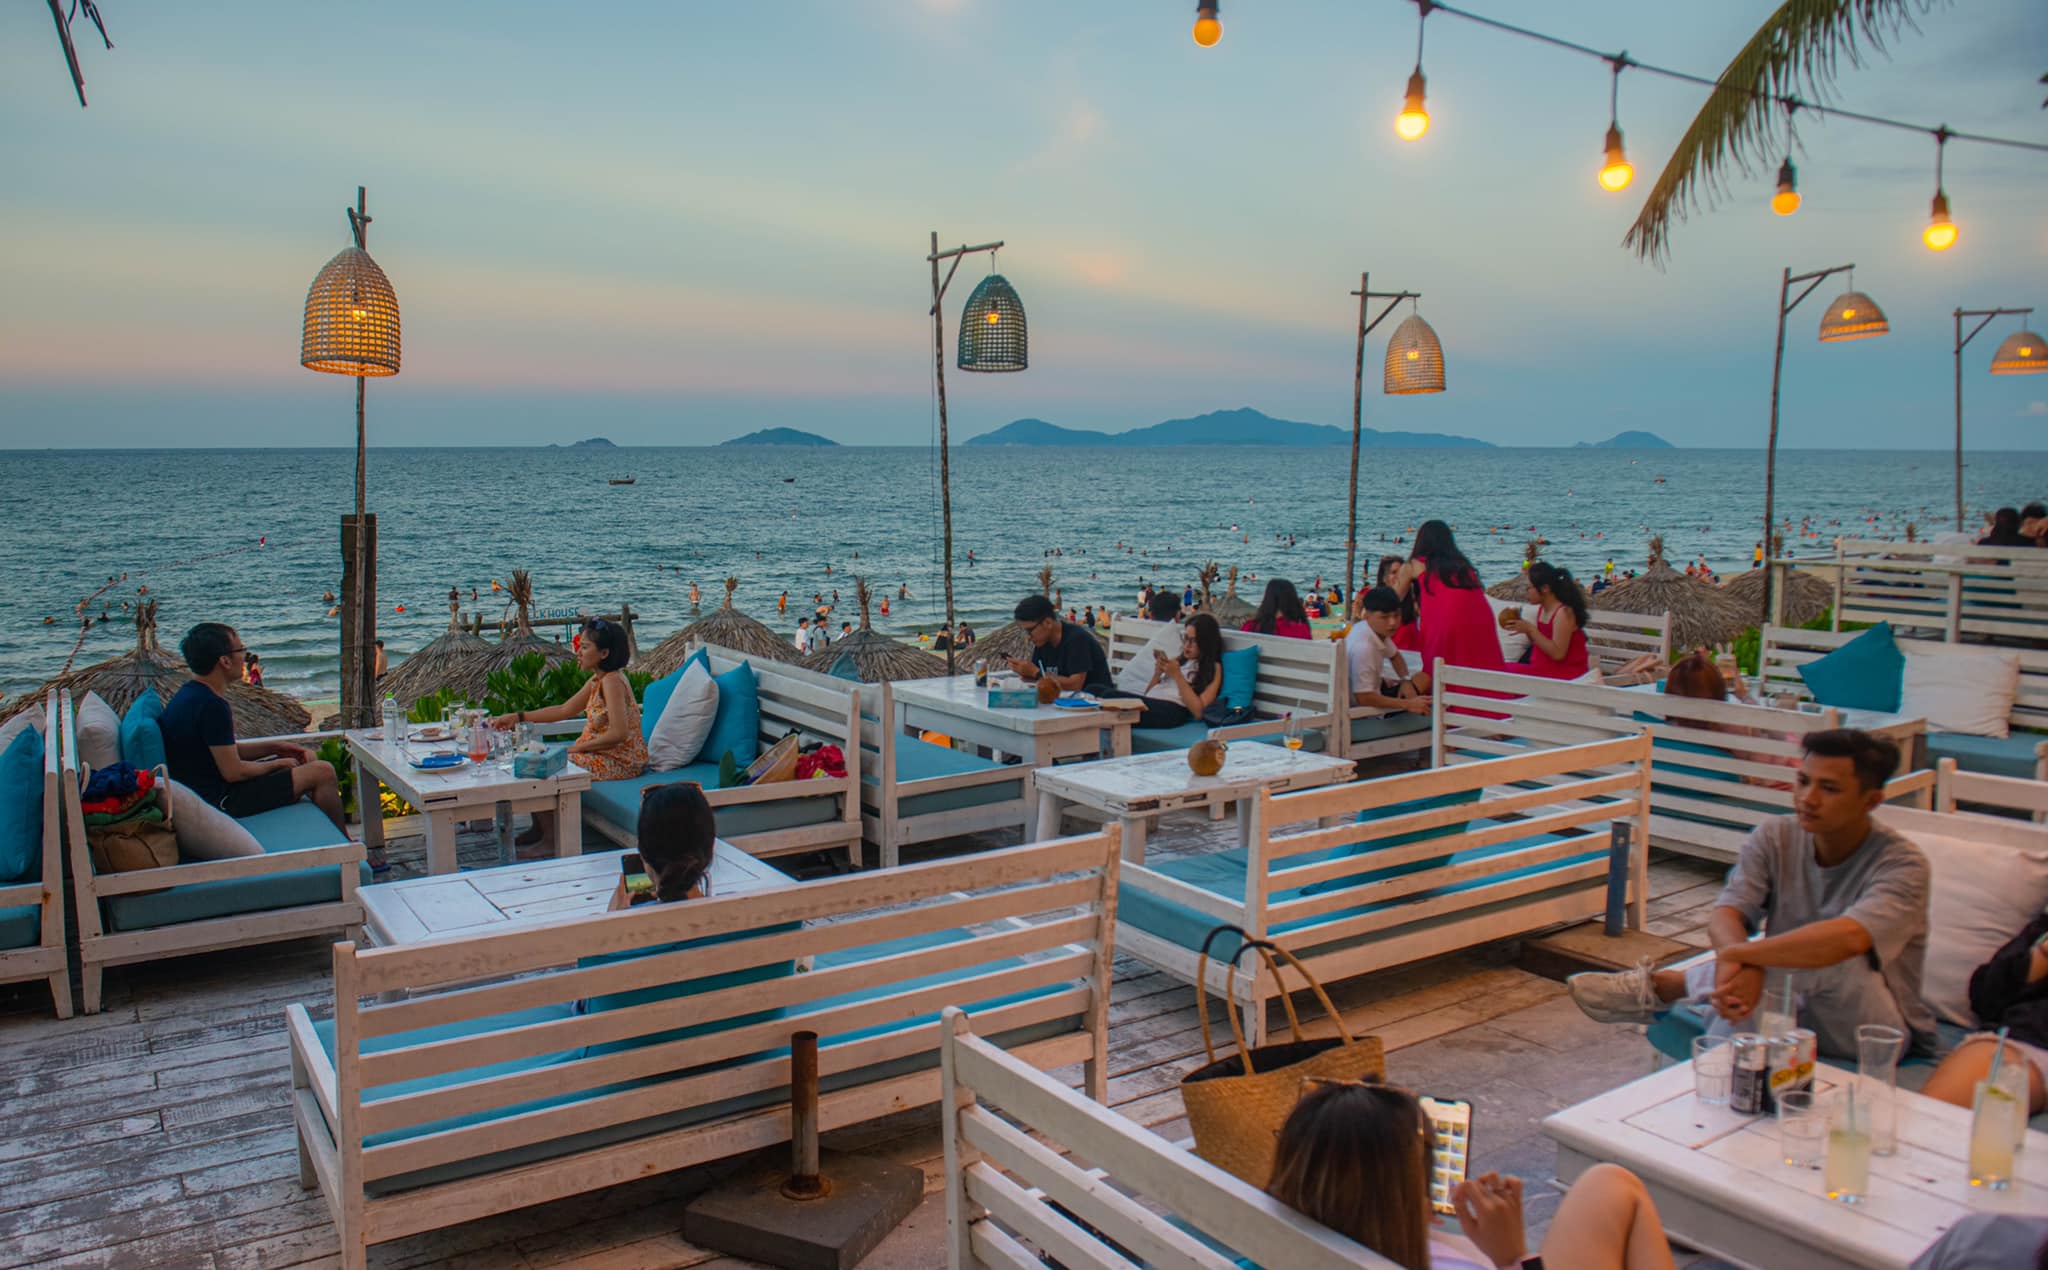 The Deck House – Quán cà phê siêu xinh bên bờ biển